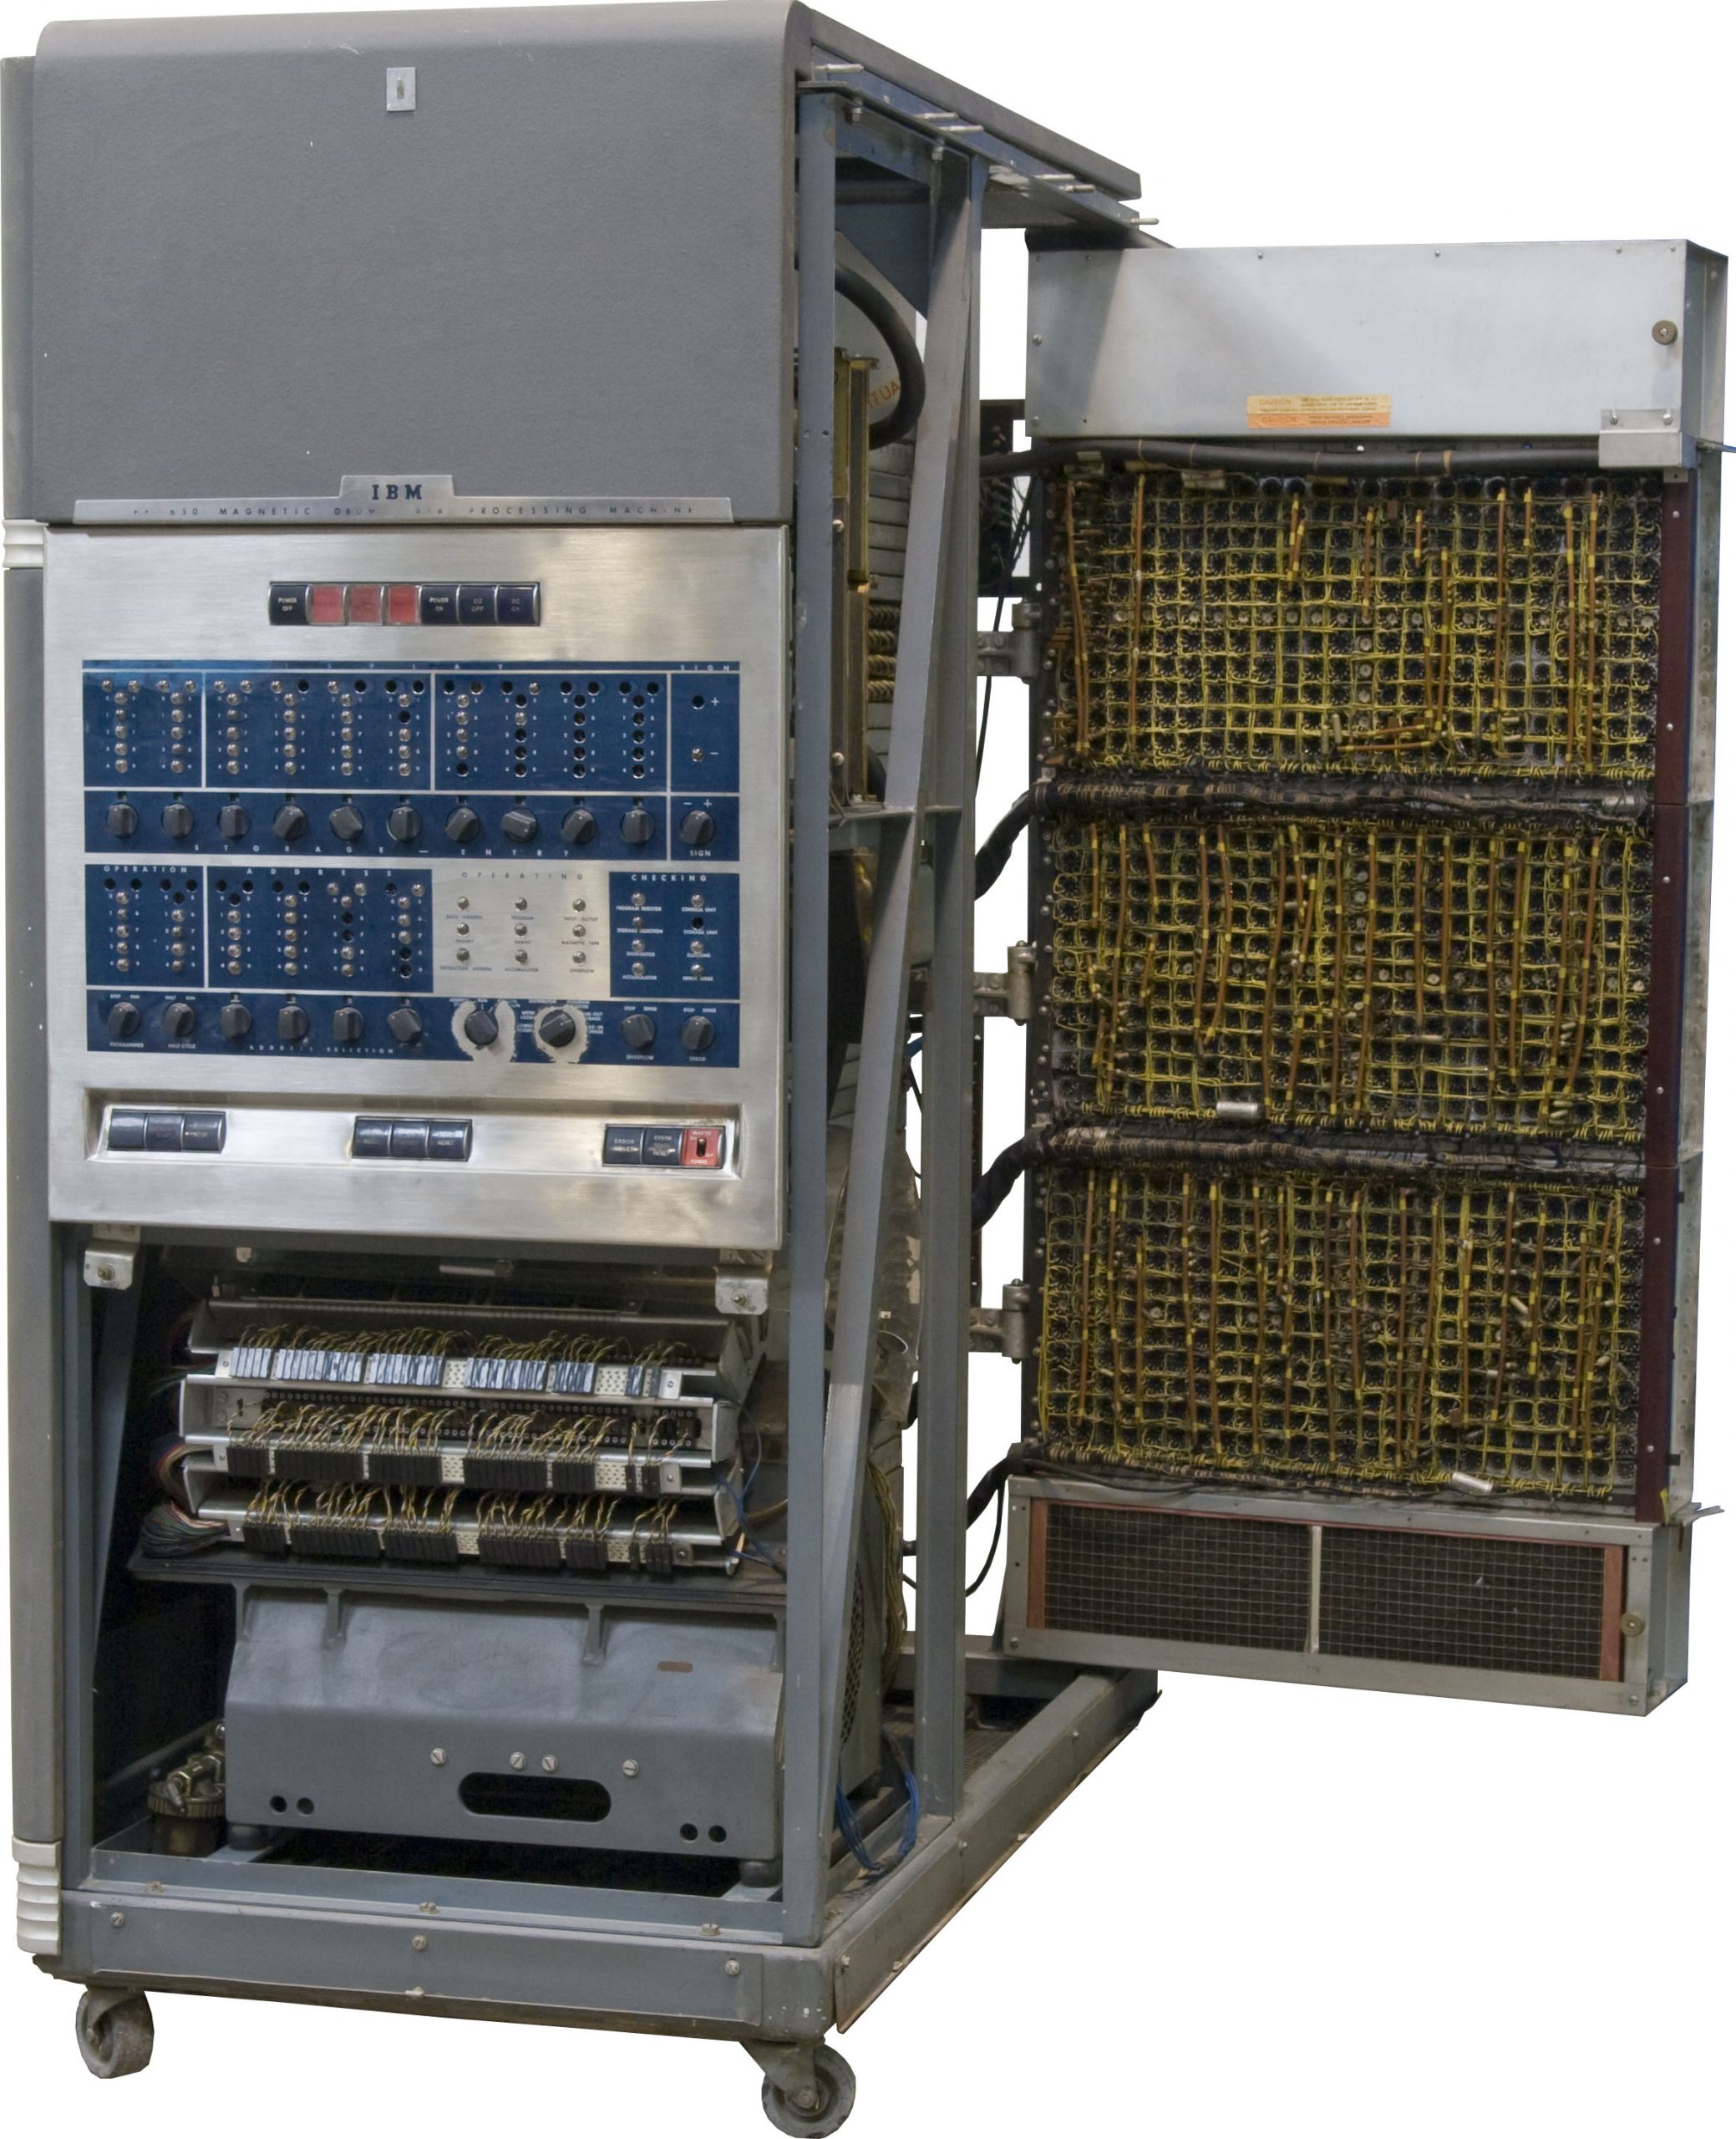 Computadora IBM 650, 1954. Pesaba 900 kg, costaba medio millón de dólares [4]. Por eso es que IBM estaba tan interesada en la miniaturización de sus computadoras.